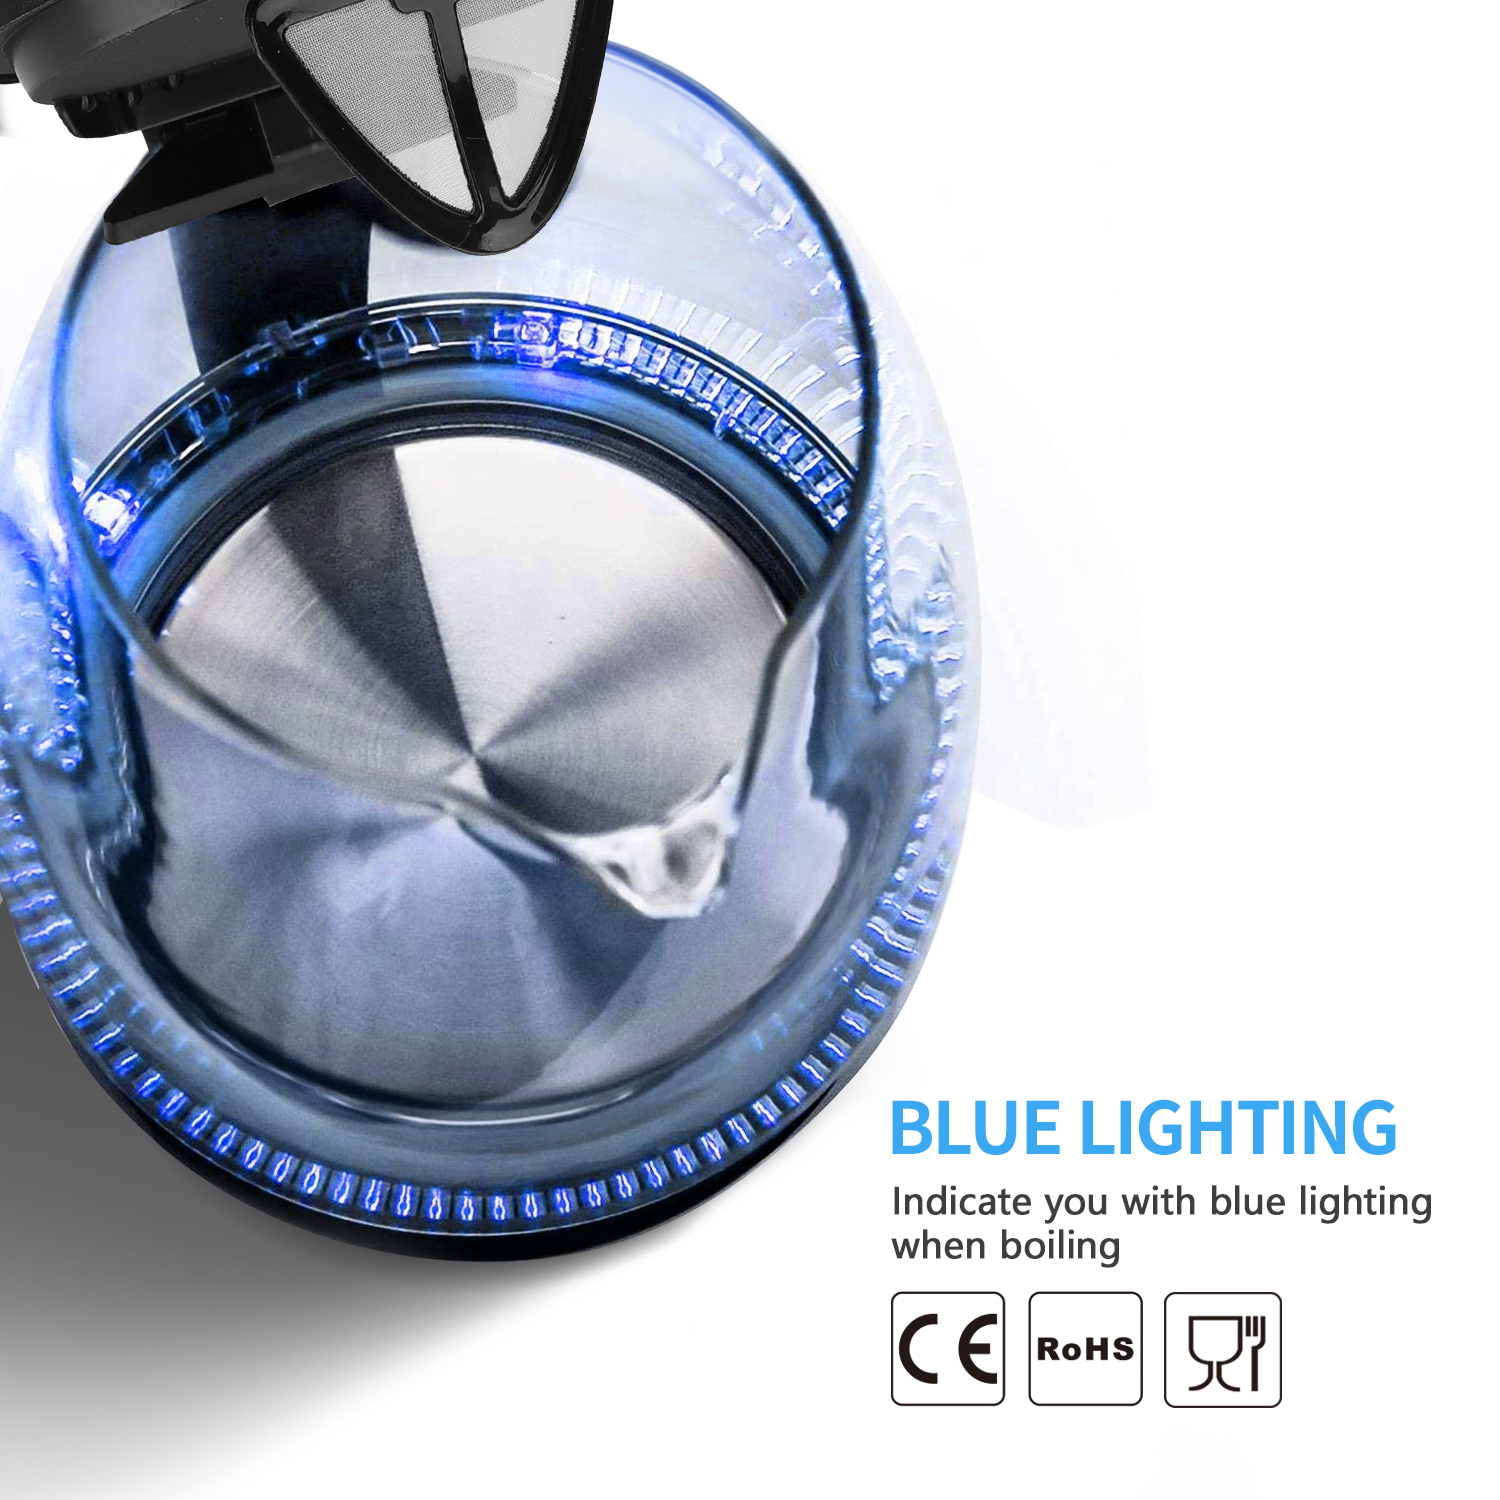 Aigostar Adam 30GOM - Bouilloire électrique en cristal avec illumination LED, capacité de 1,7 litres, puissance de 2200W, sans BPA et système de protection contre l'ébullition à sec. Design exclusif.